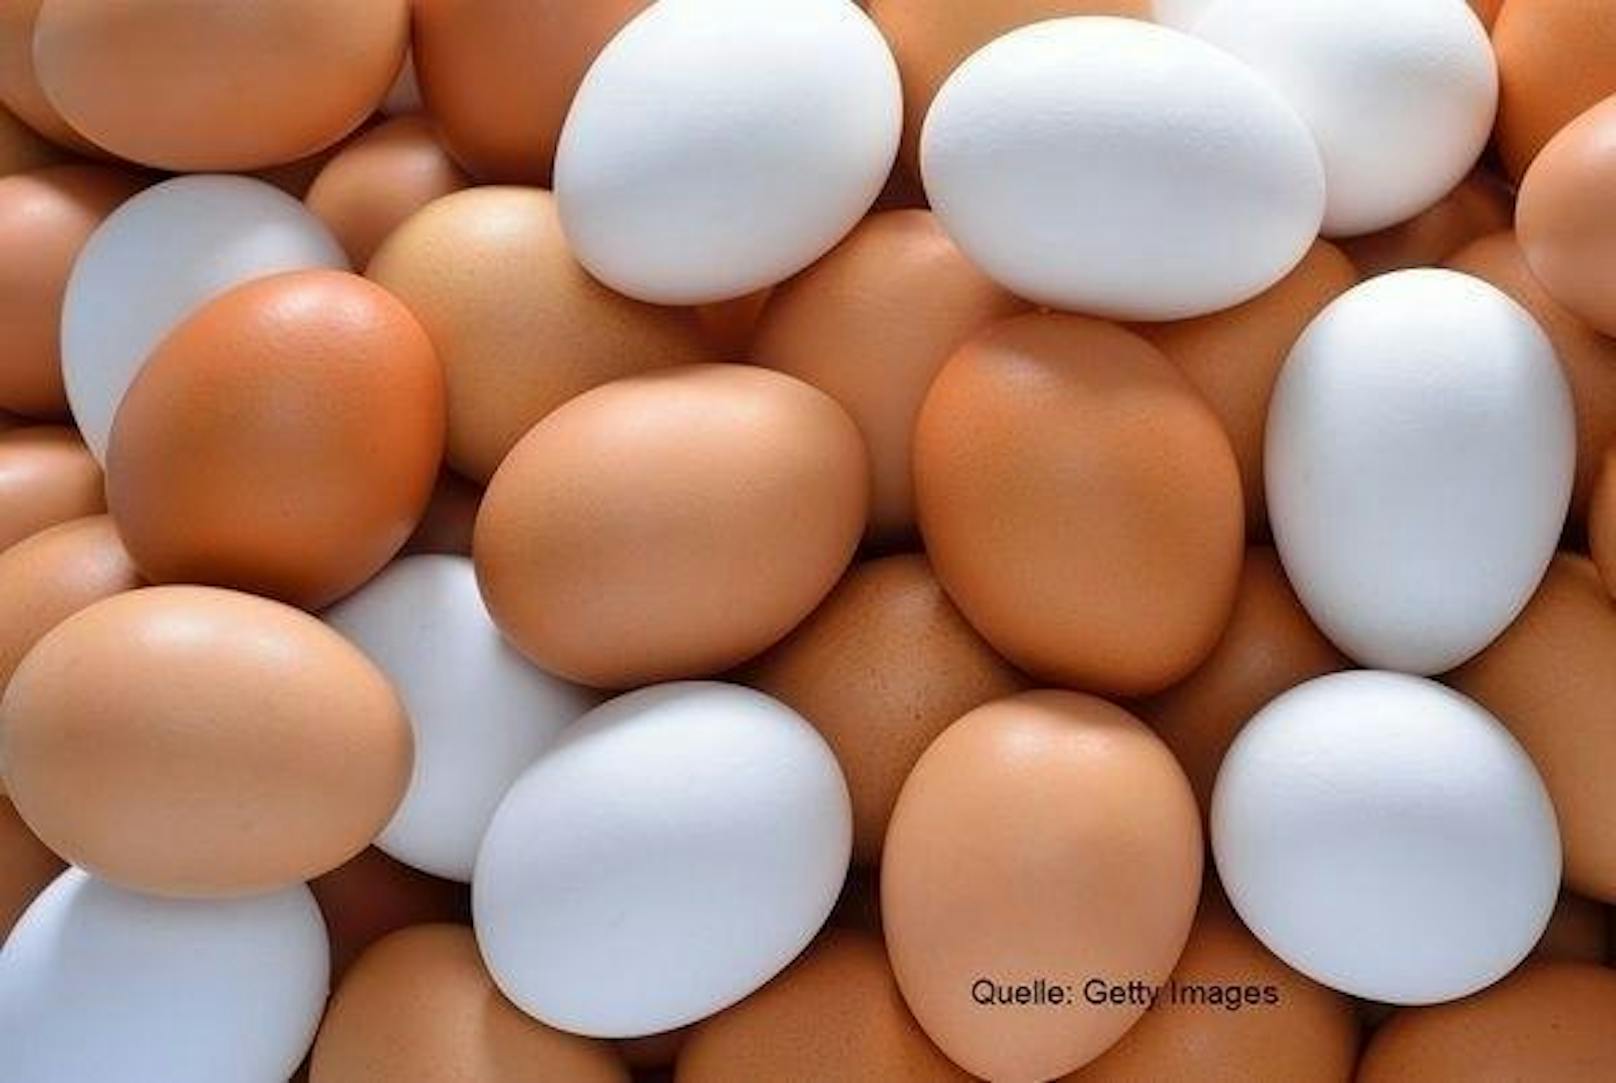 Gemäß "Spiegel" können Eier bis zwei Wochen nach Ablauf des Mindesthaltbarkeitsdatums verbraucht werden - vor allem zum Kochen und Backen.